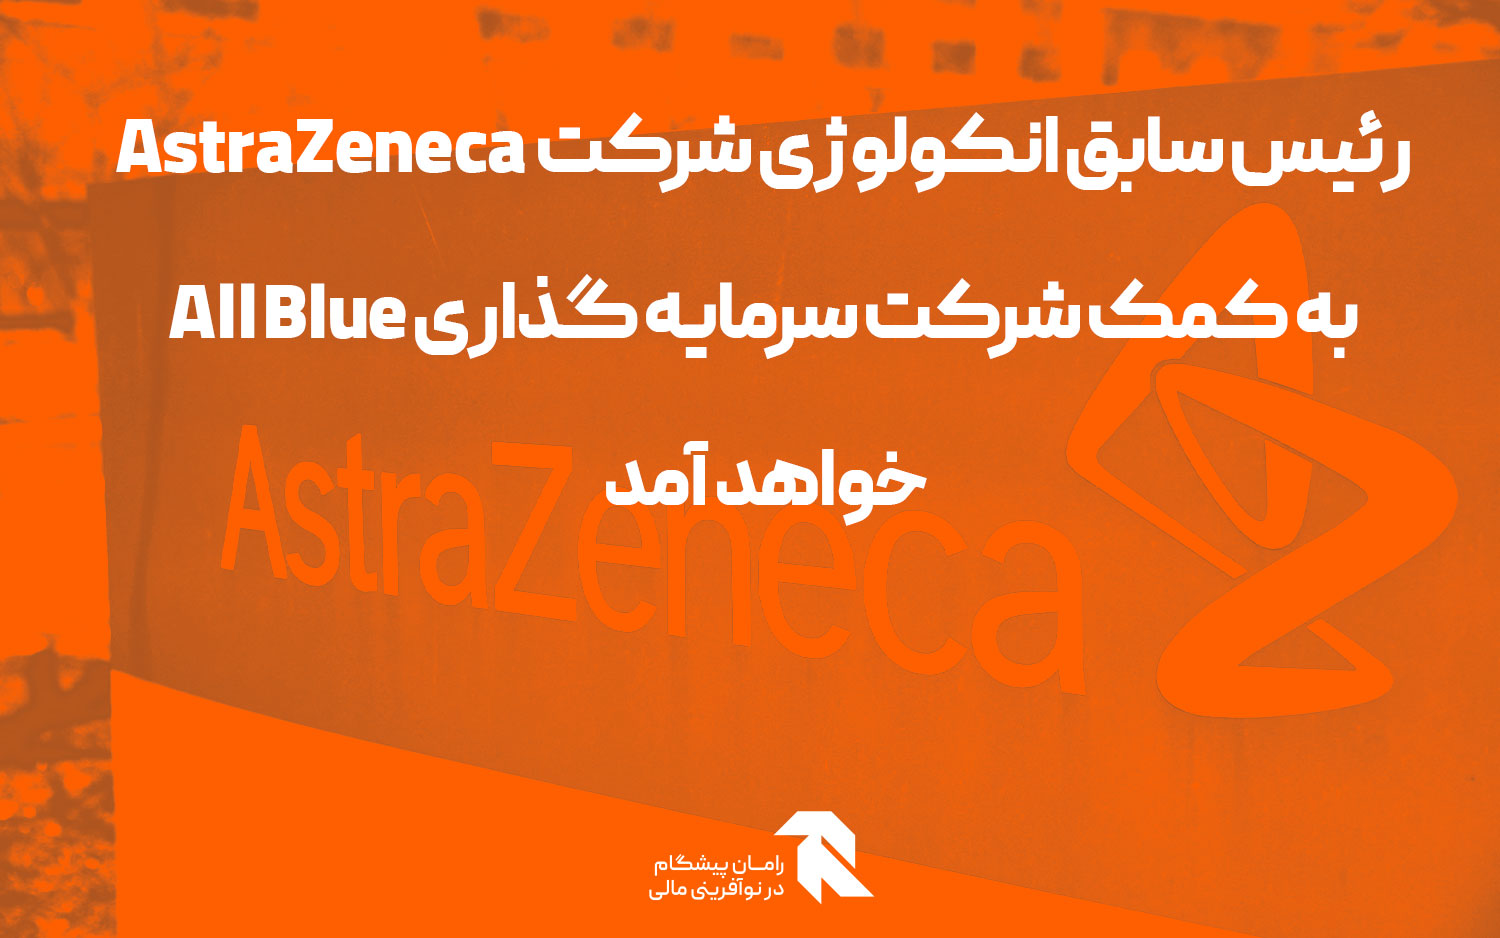 رئیس سابق انکولوژی شرکت AstraZeneca به کمک شرکت سرمایه گذاری All Blue خواهد آمد